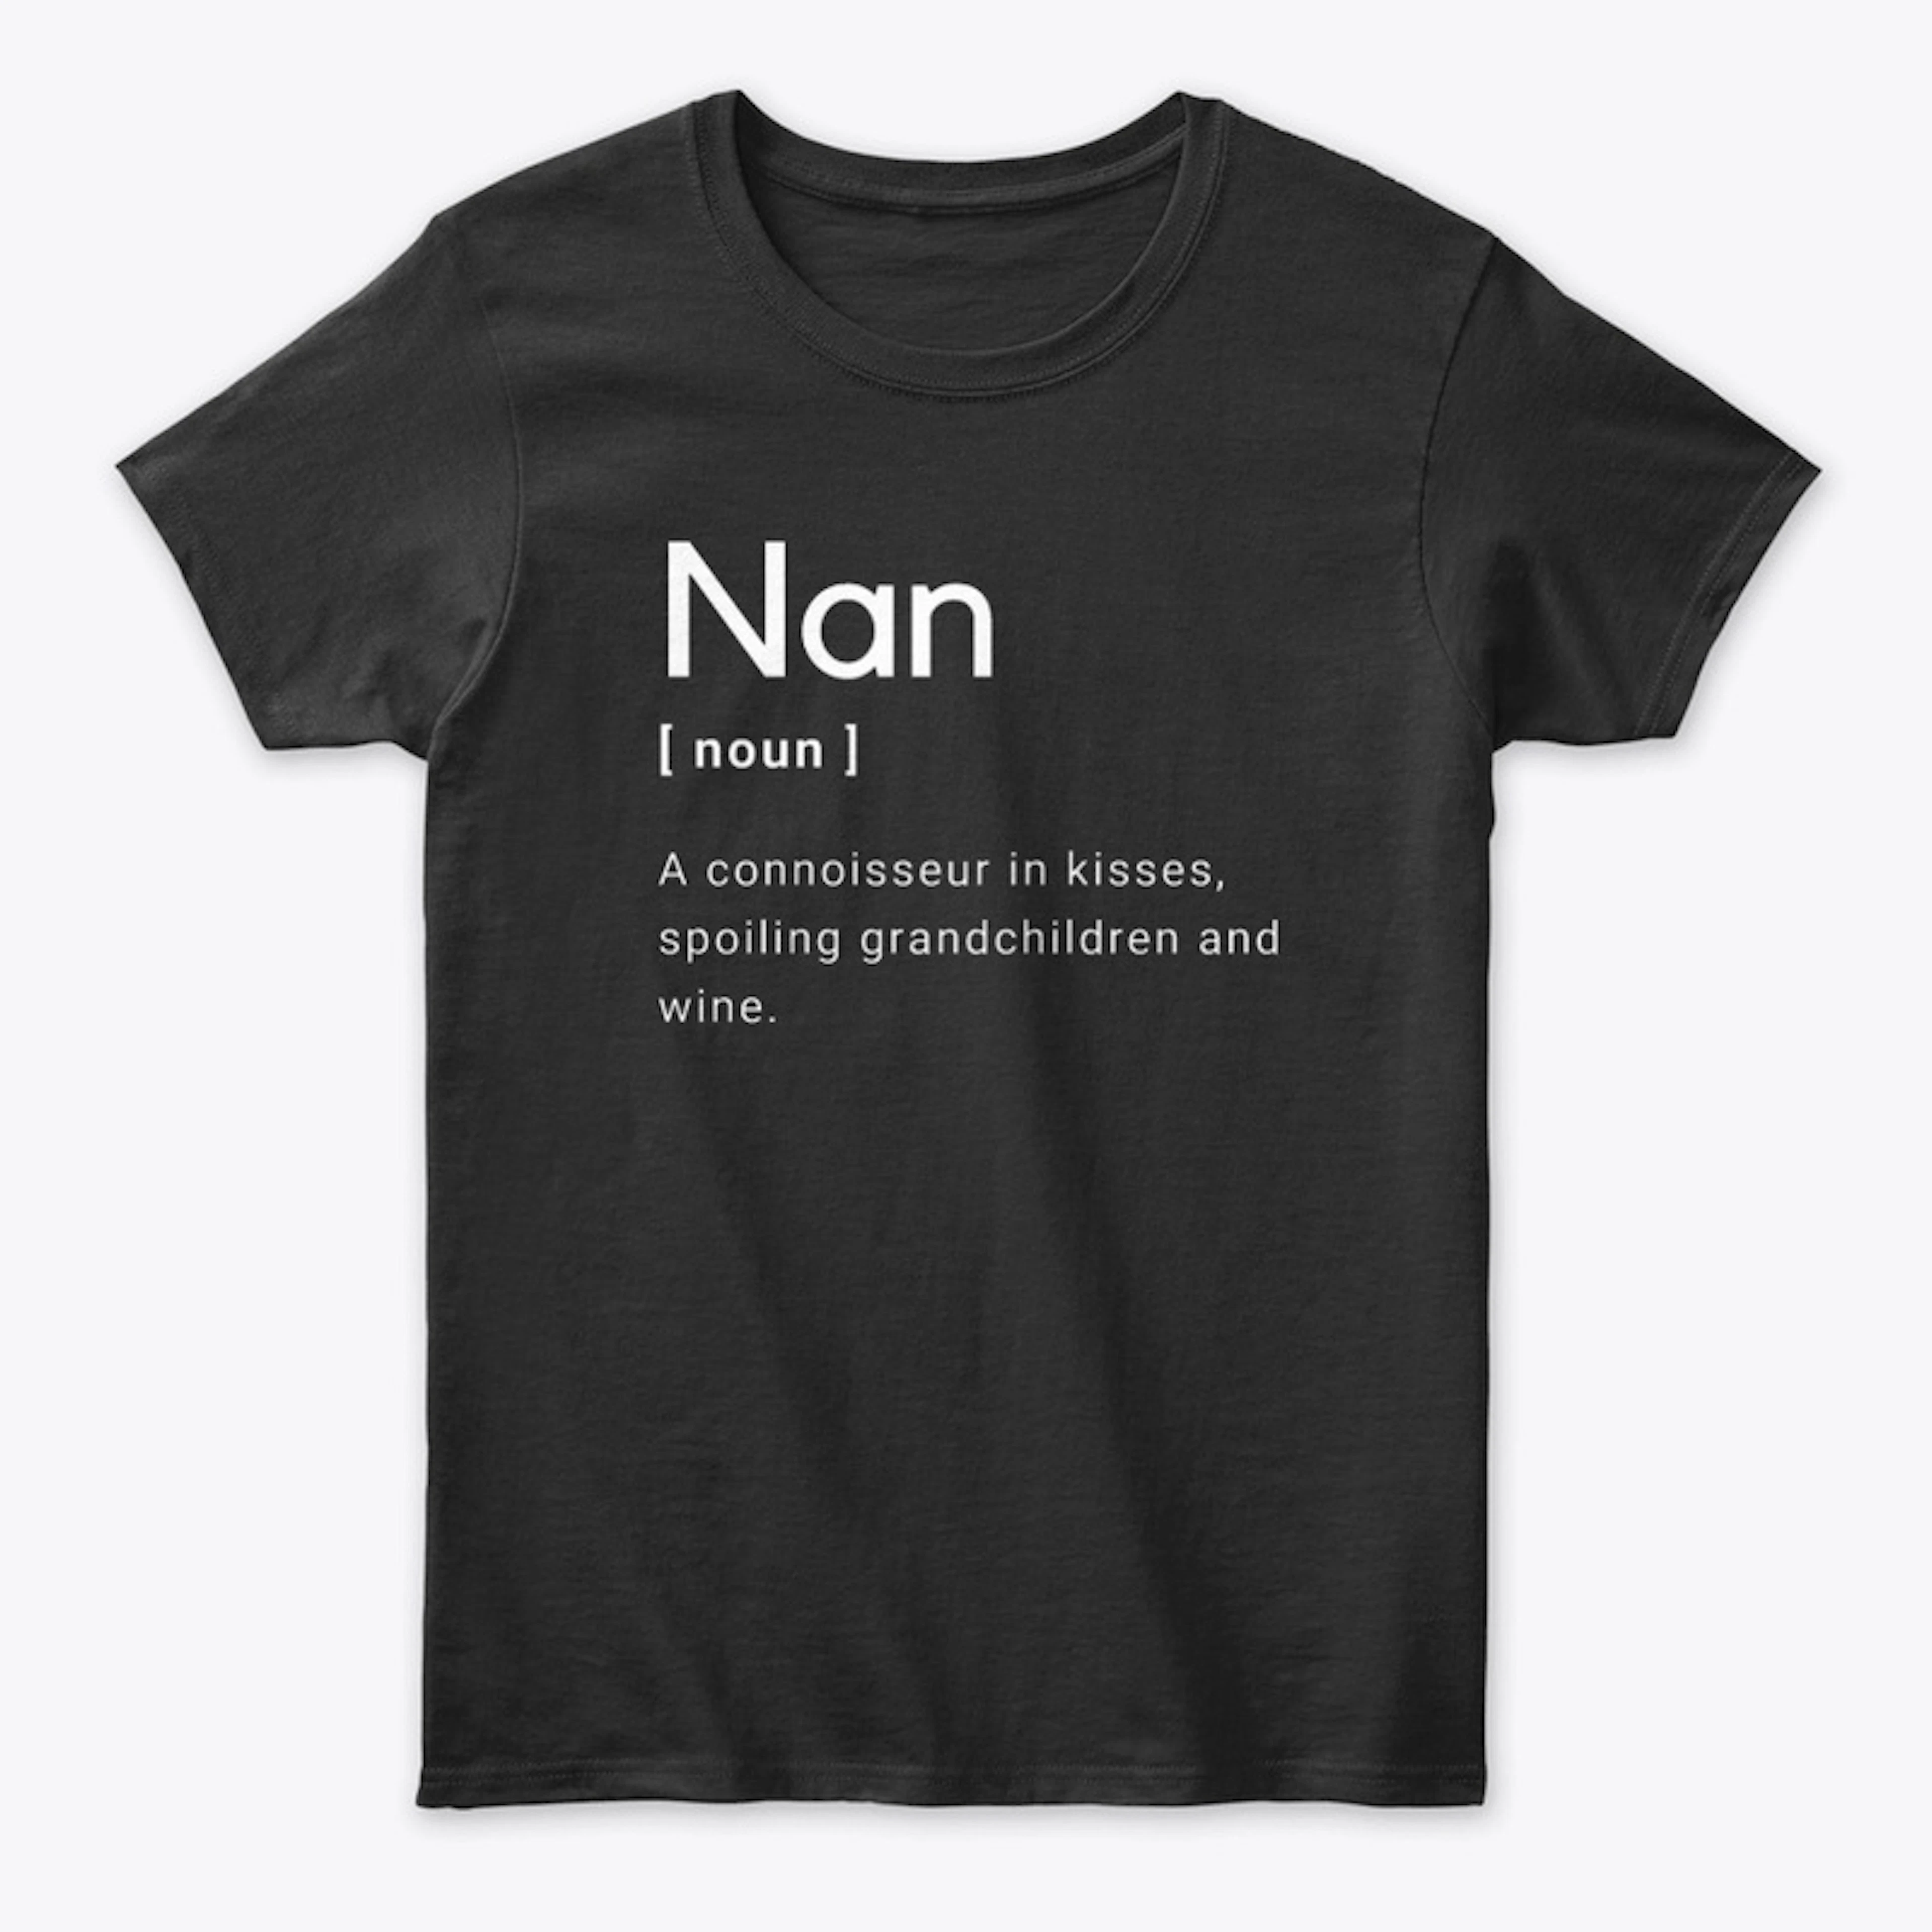 Nan Definition